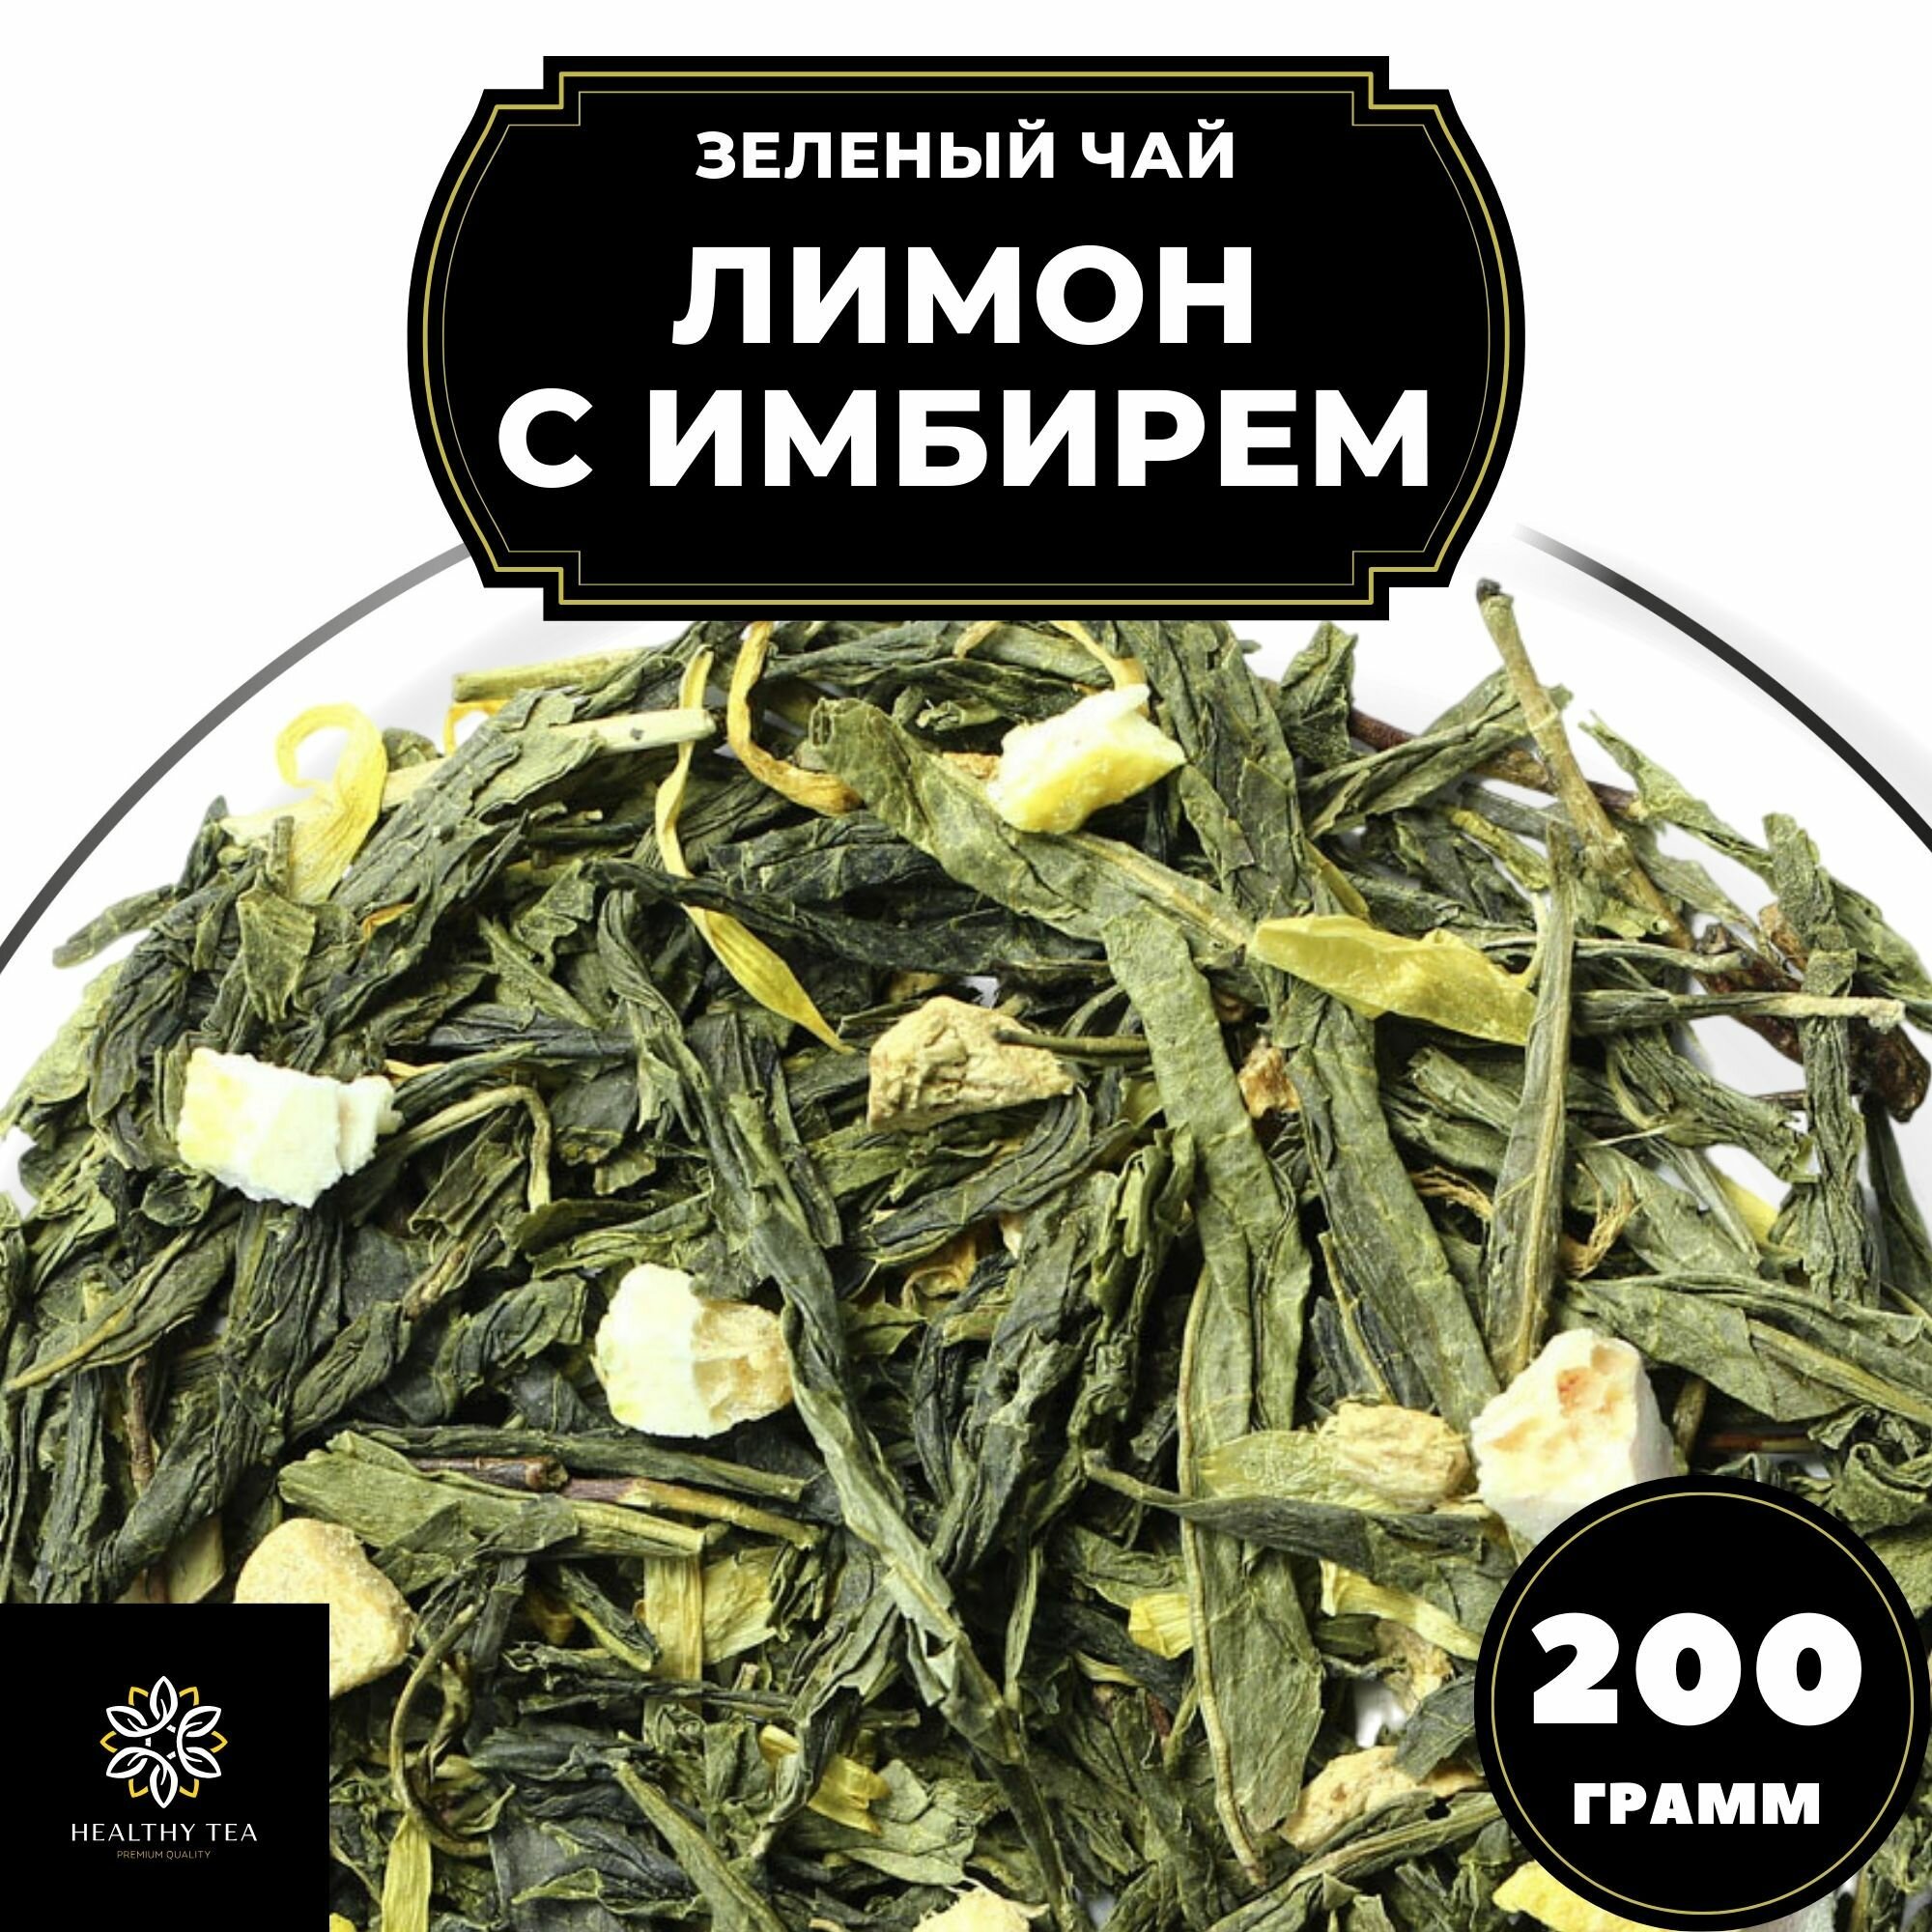 Китайский Зеленый чай с имбирем, лимоном и календулой Лимон с имбирем Полезный чай / HEALTHY TEA, 200 г